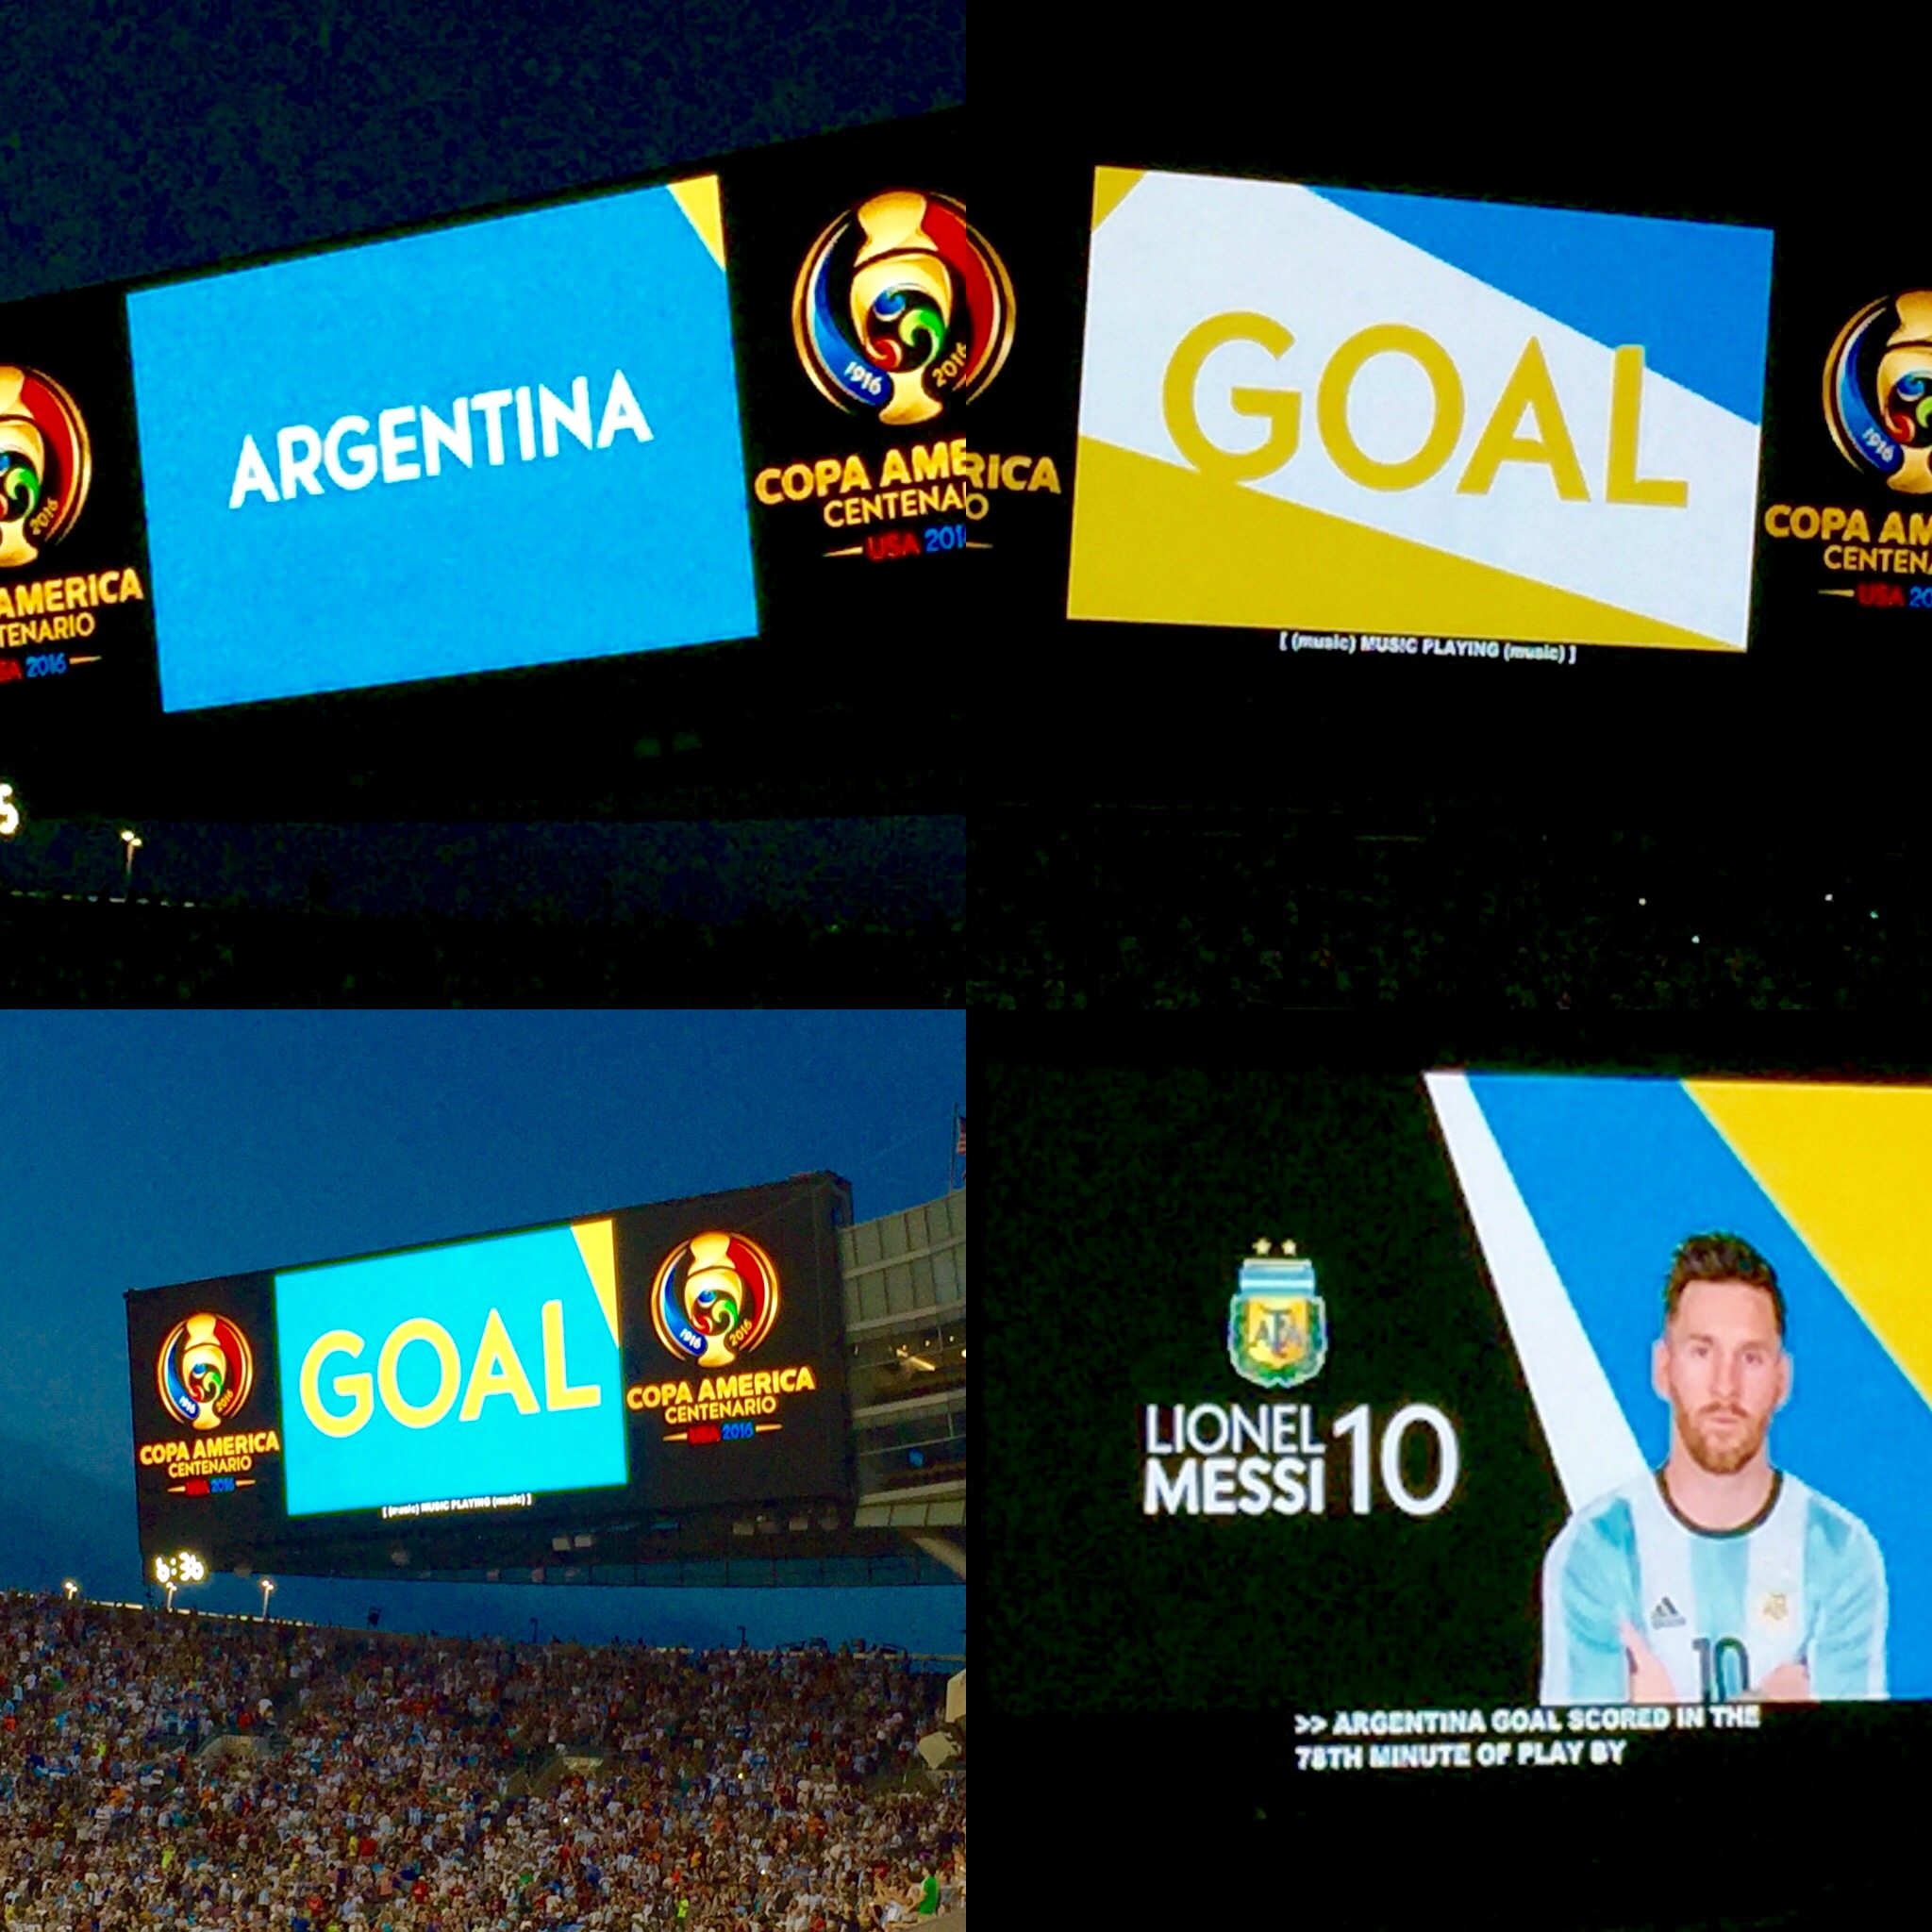 Argentina GOAL!  MESSI!  MESSI!  MESSI!  